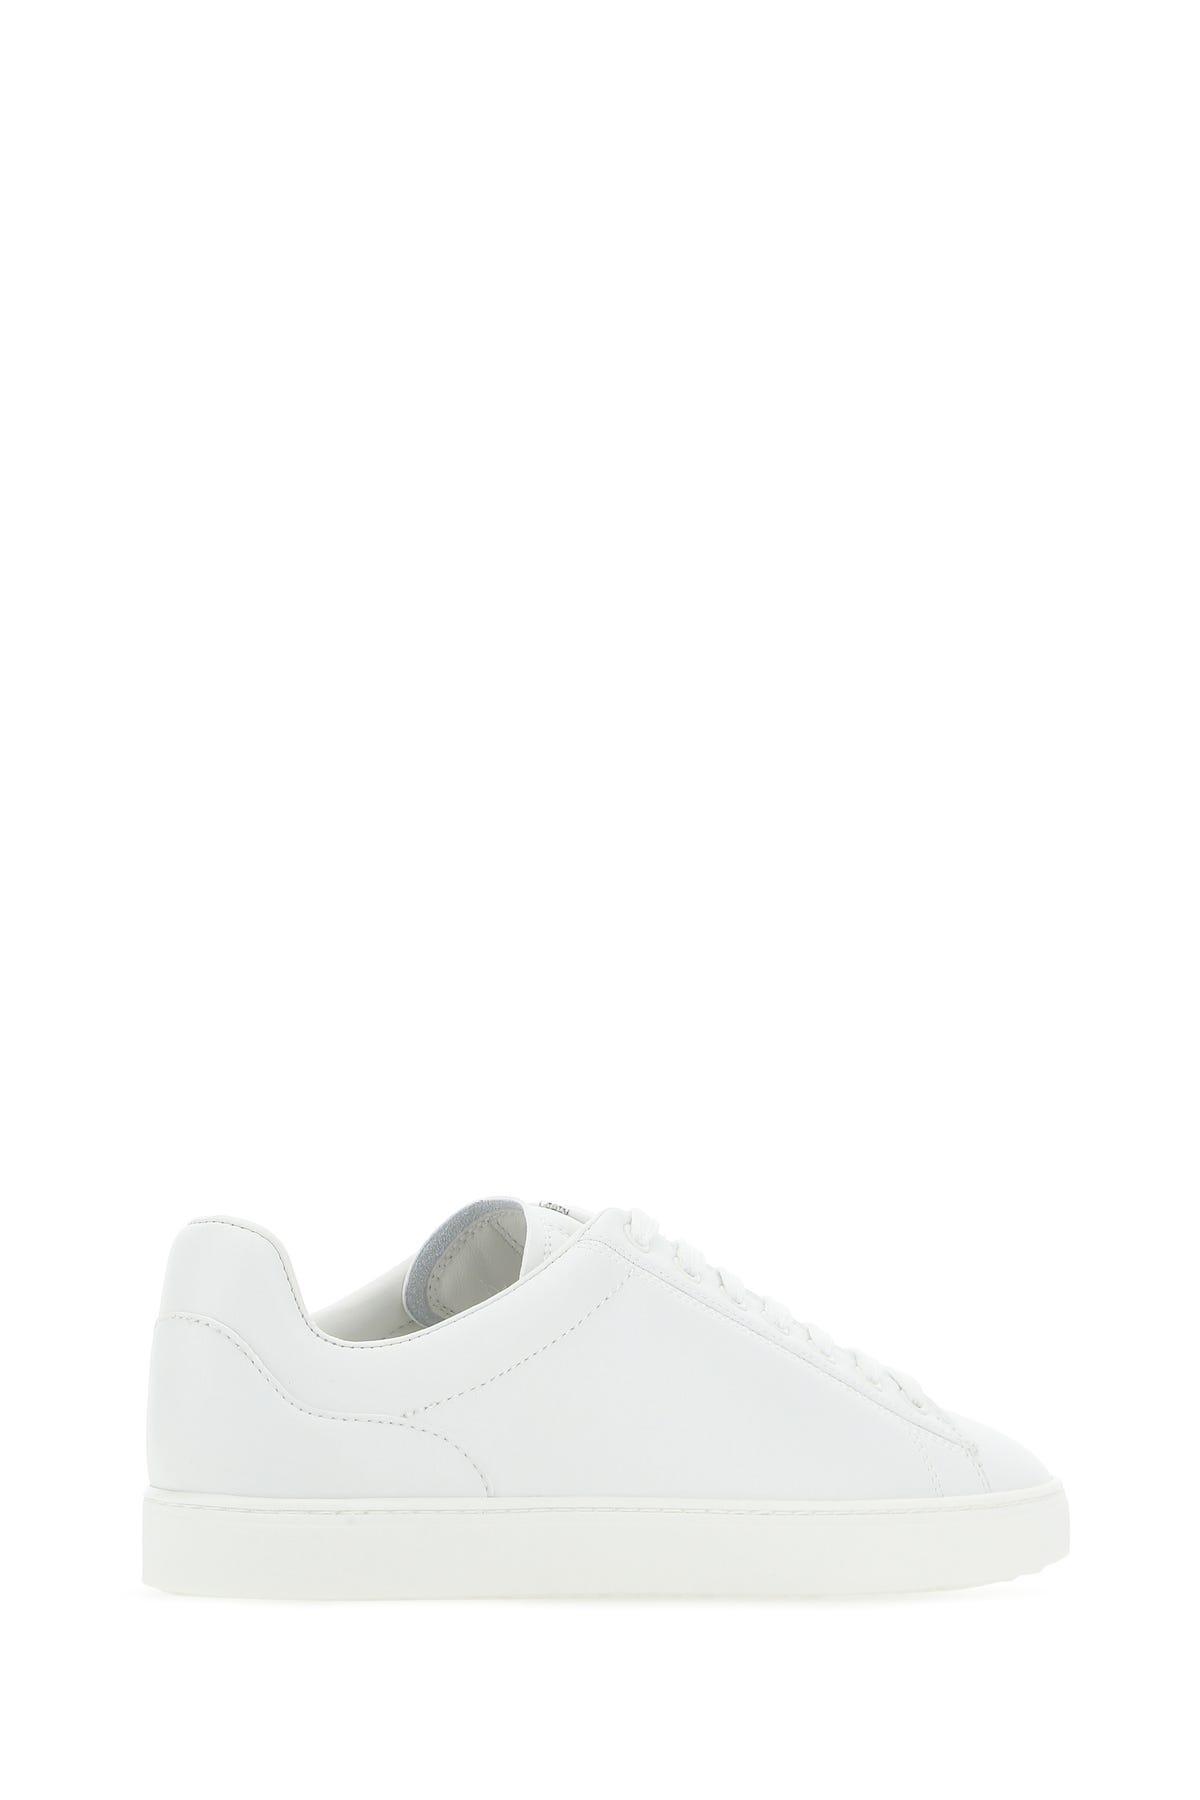 Stuart Weitzman Sneakers in White | Lyst